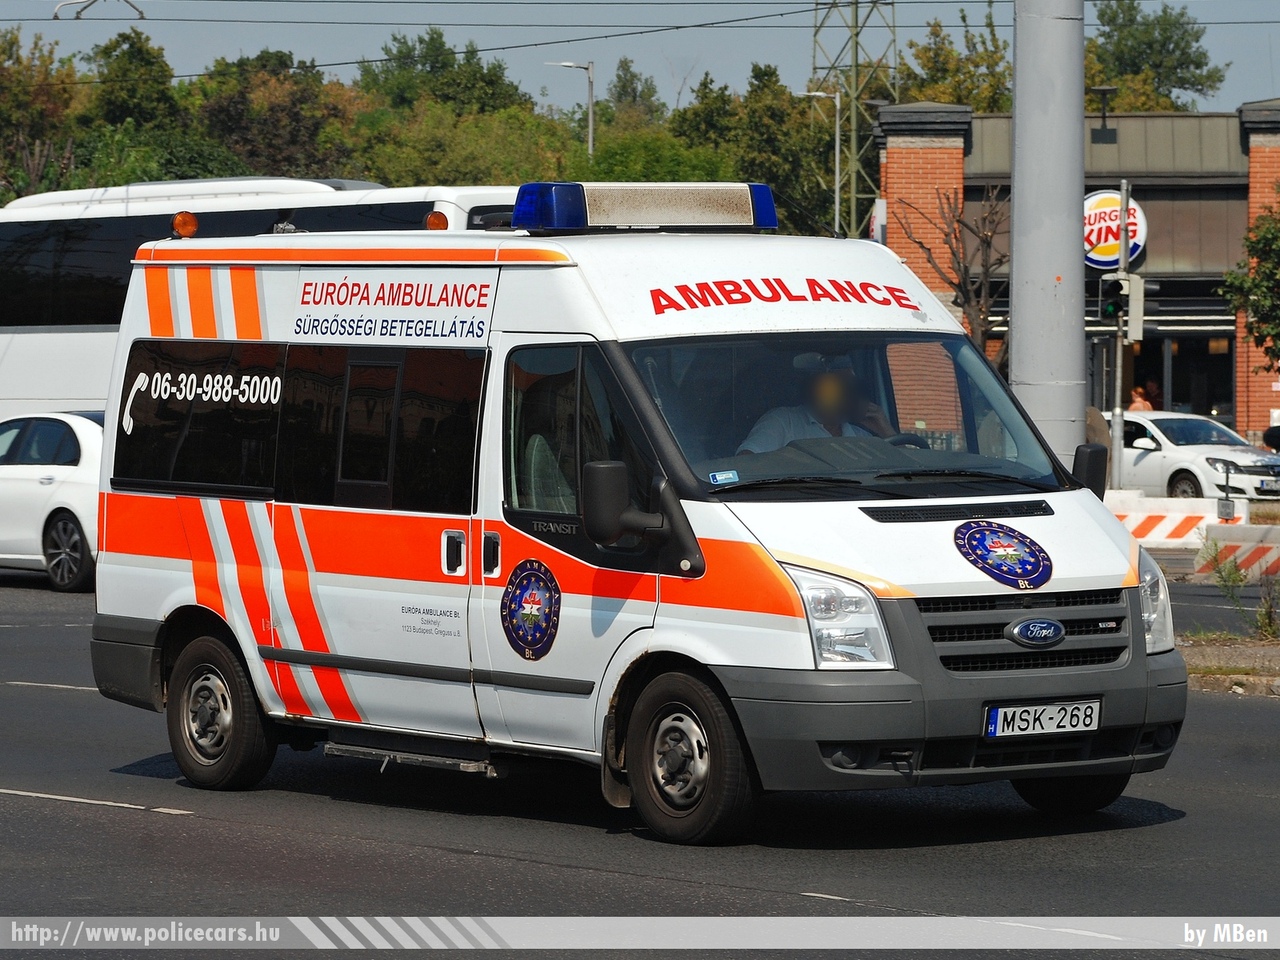 Keywords: mentő mentőautó magyar Magyarország hungarian Hungary ambulance MSK-268